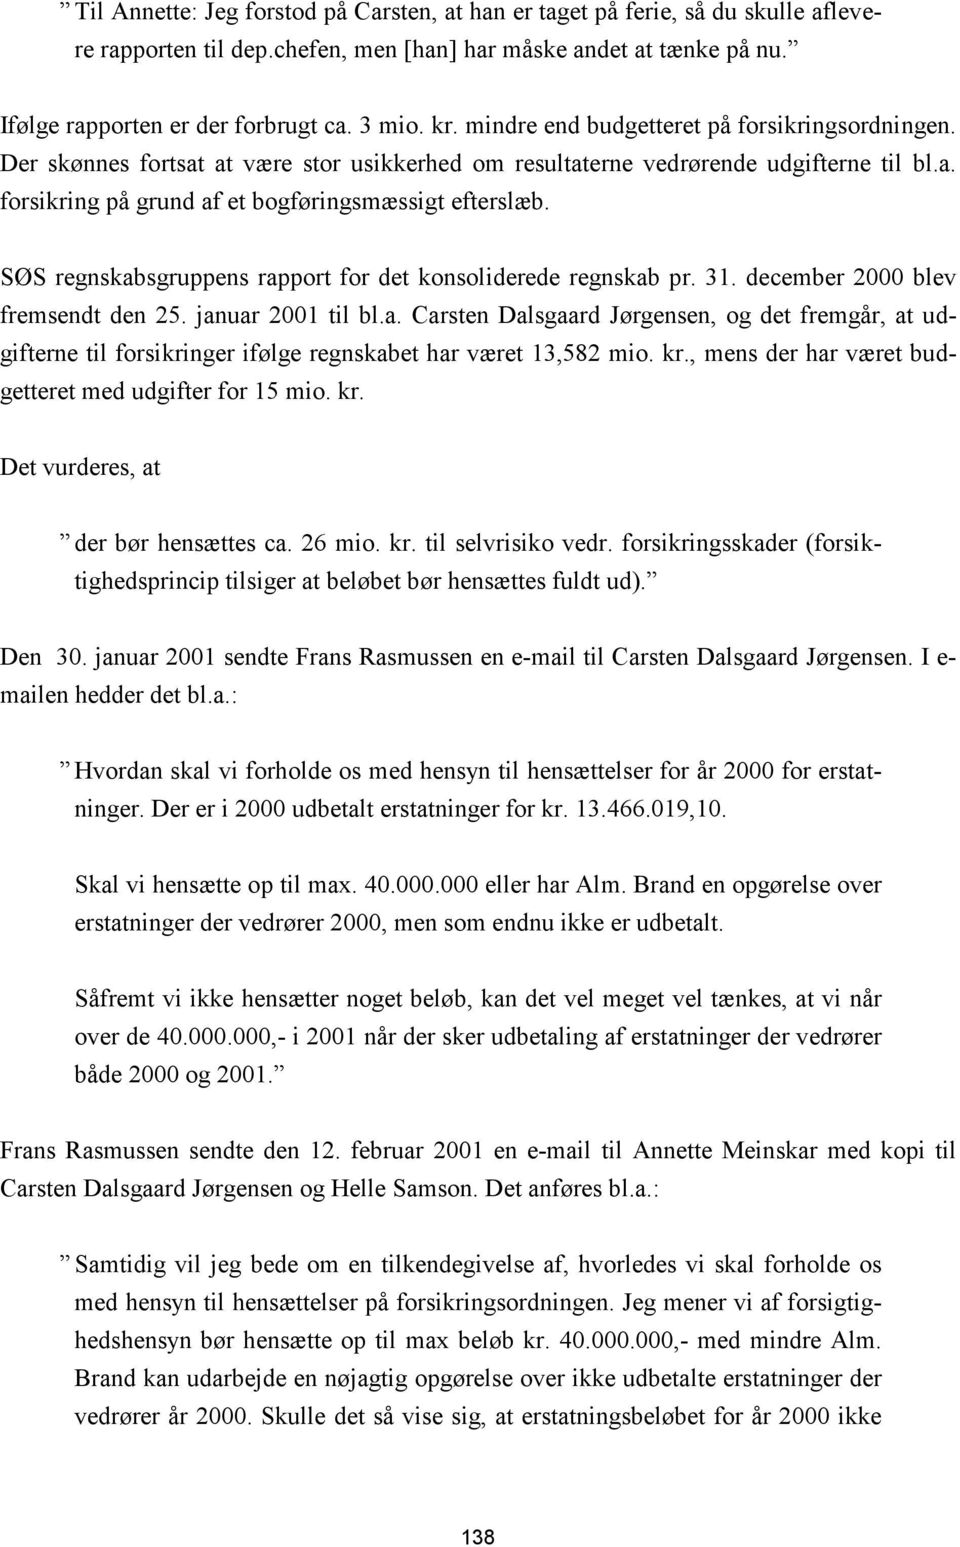 SØS regnskabsgruppens rapport for det konsoliderede regnskab pr. 31. december 2000 blev fremsendt den 25. januar 2001 til bl.a. Carsten Dalsgaard Jørgensen, og det fremgår, at udgifterne til forsikringer ifølge regnskabet har været 13,582 mio.